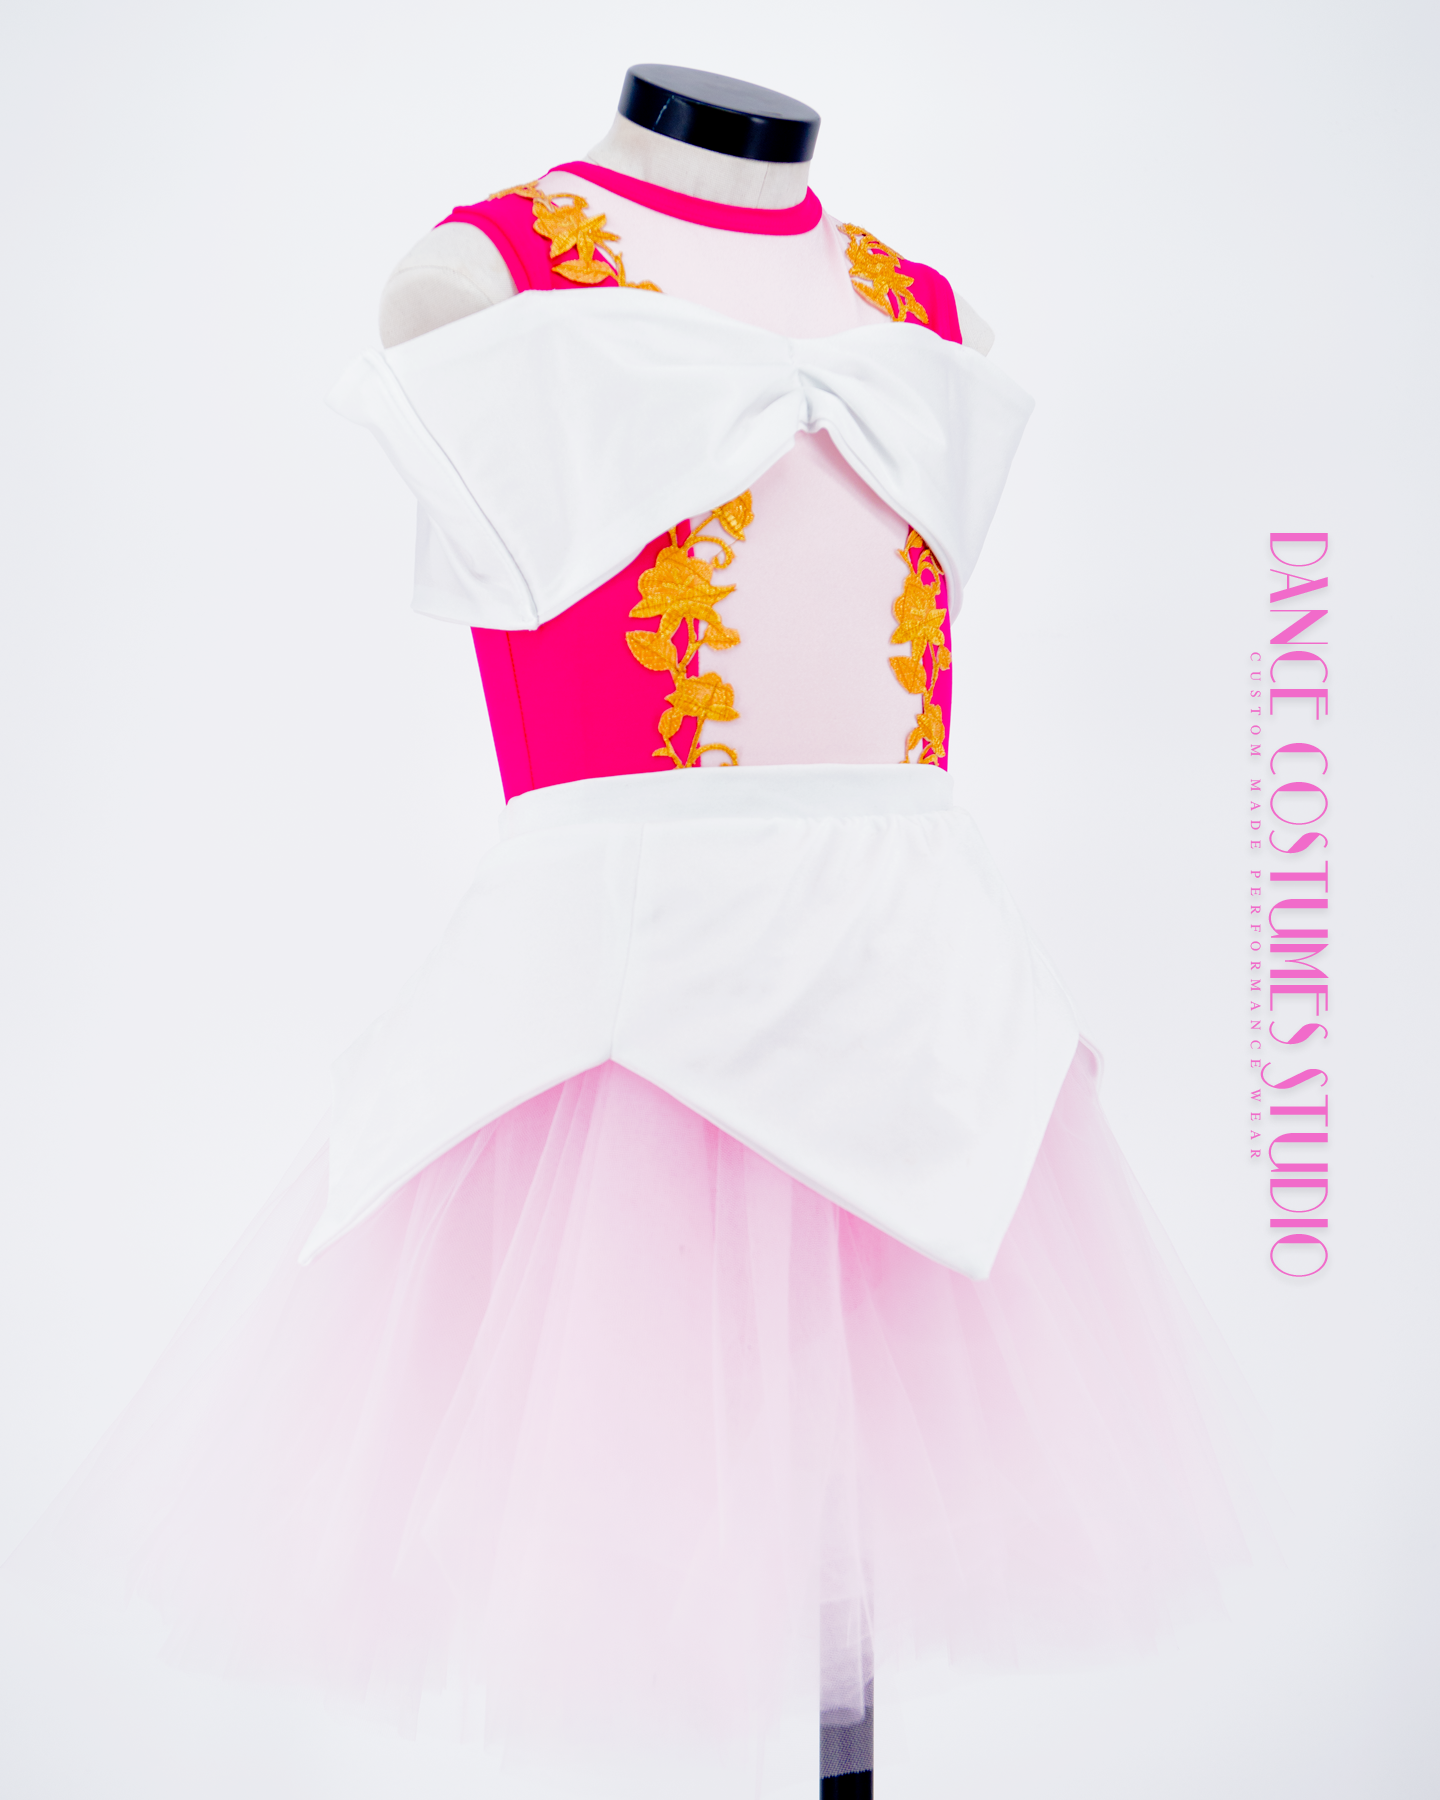 Princesse Aurora Theme Dance Costume